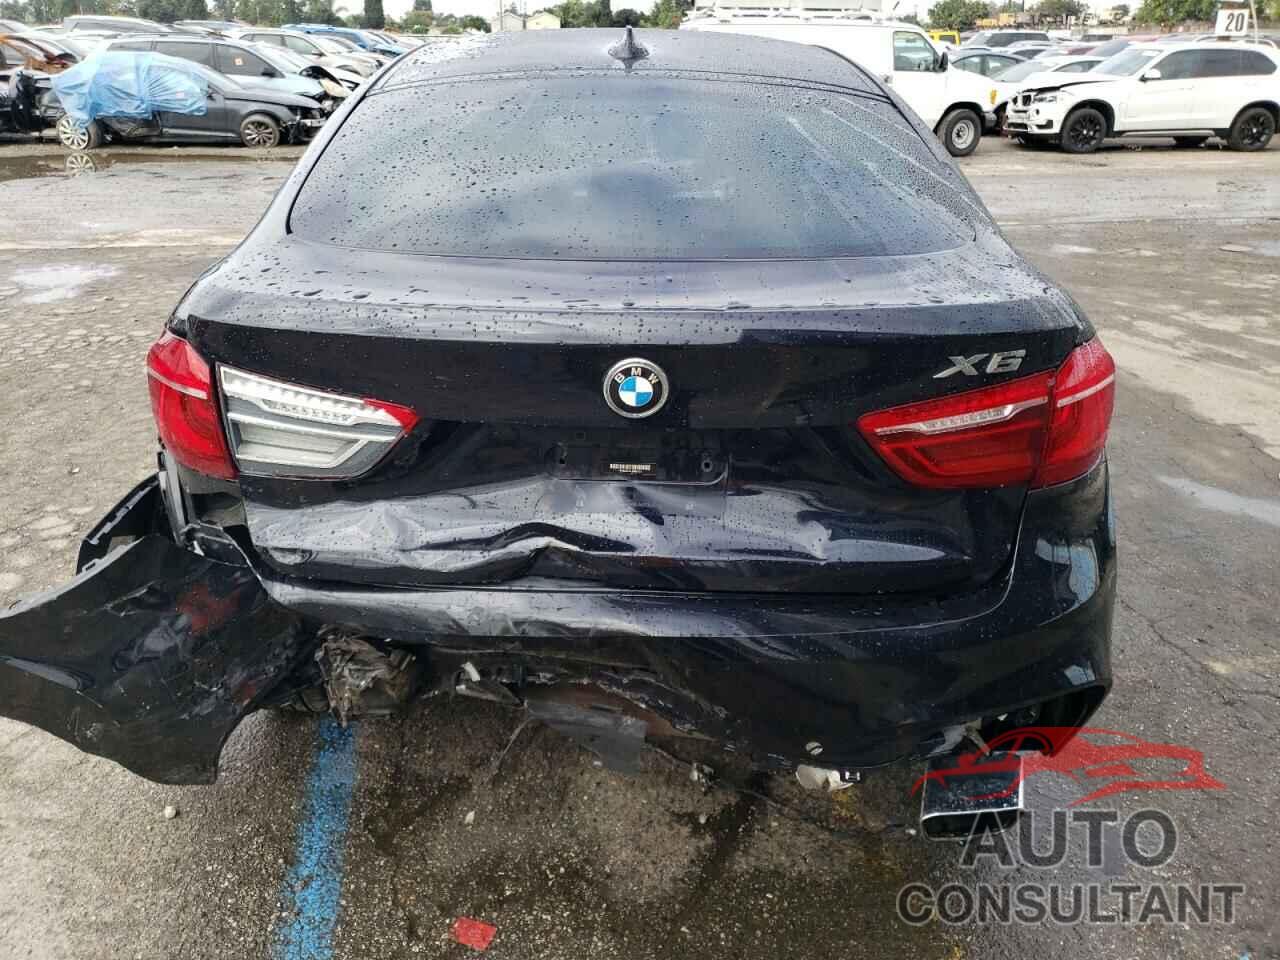 BMW X6 2018 - 5UXKU0C54J0G80721